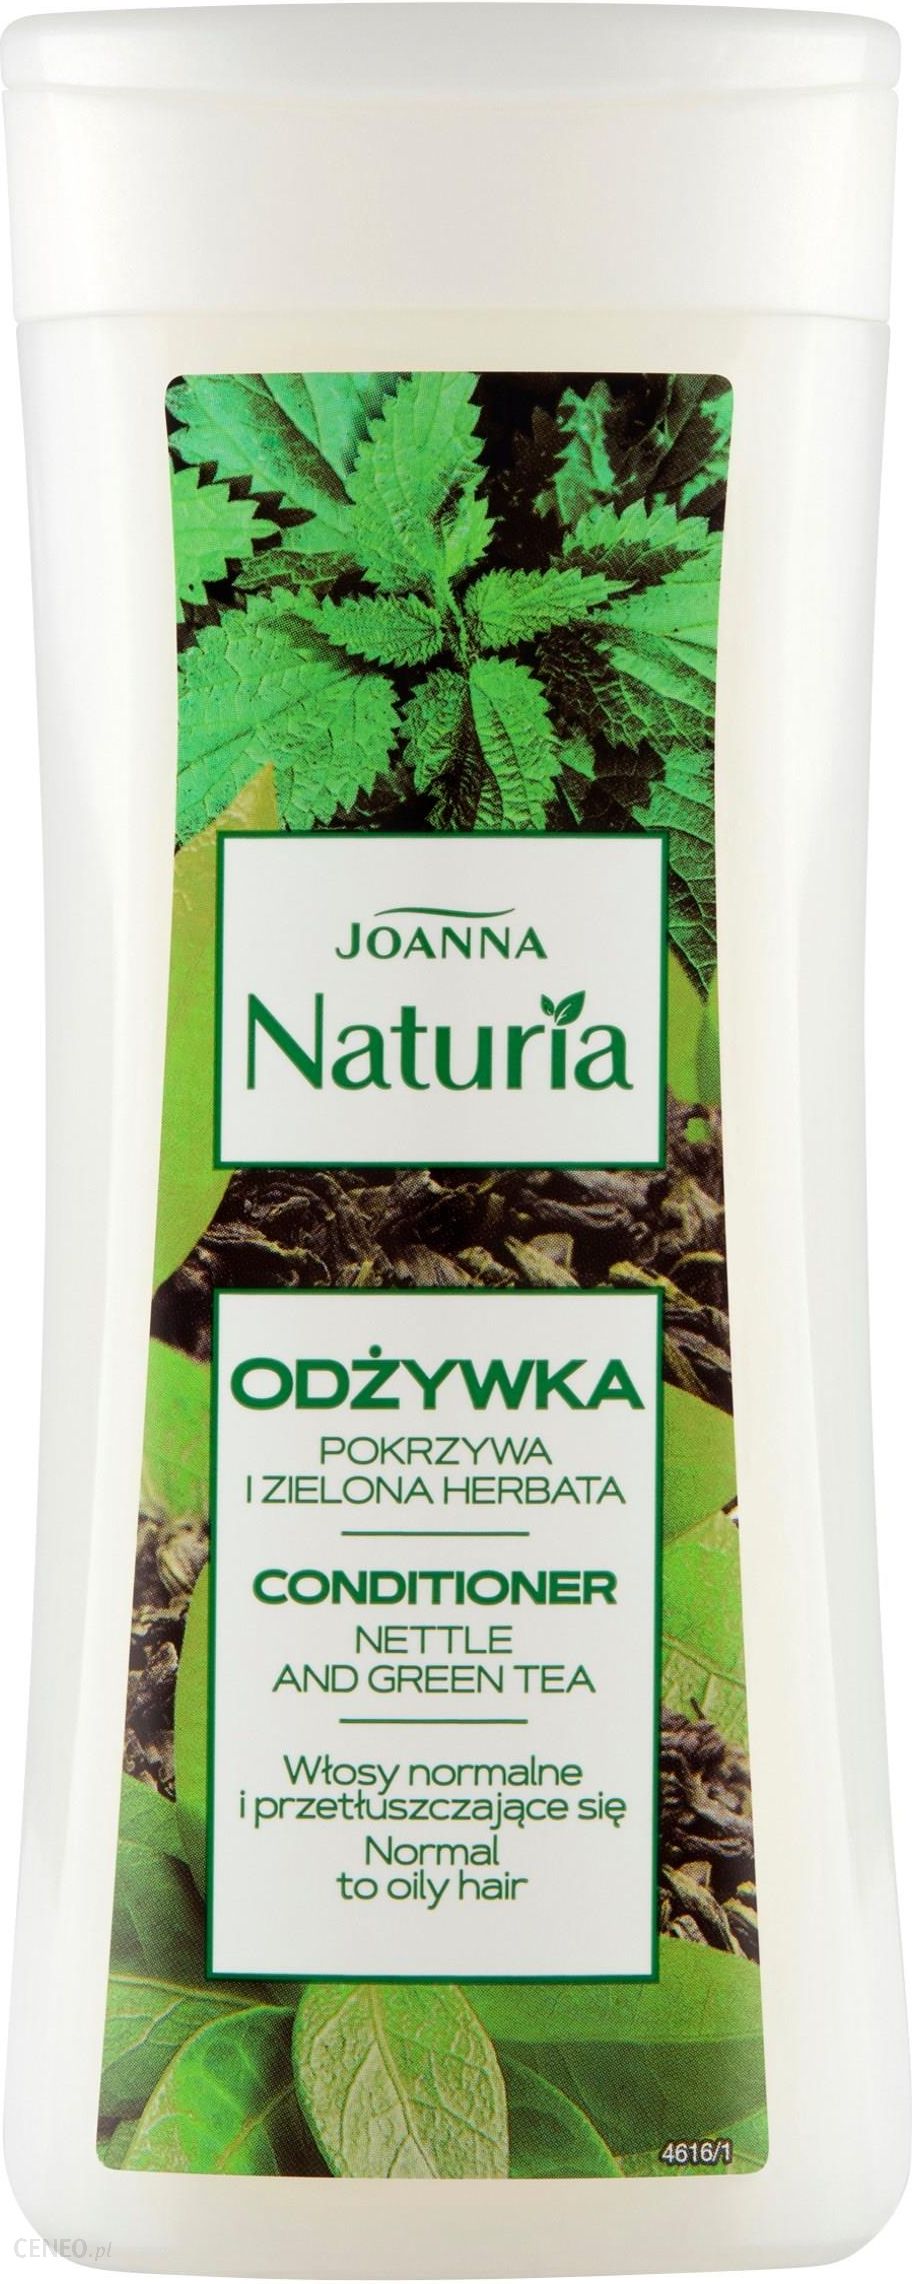 joanna naturia odżywka do włosów z pokrzywą i zieloną herbatą